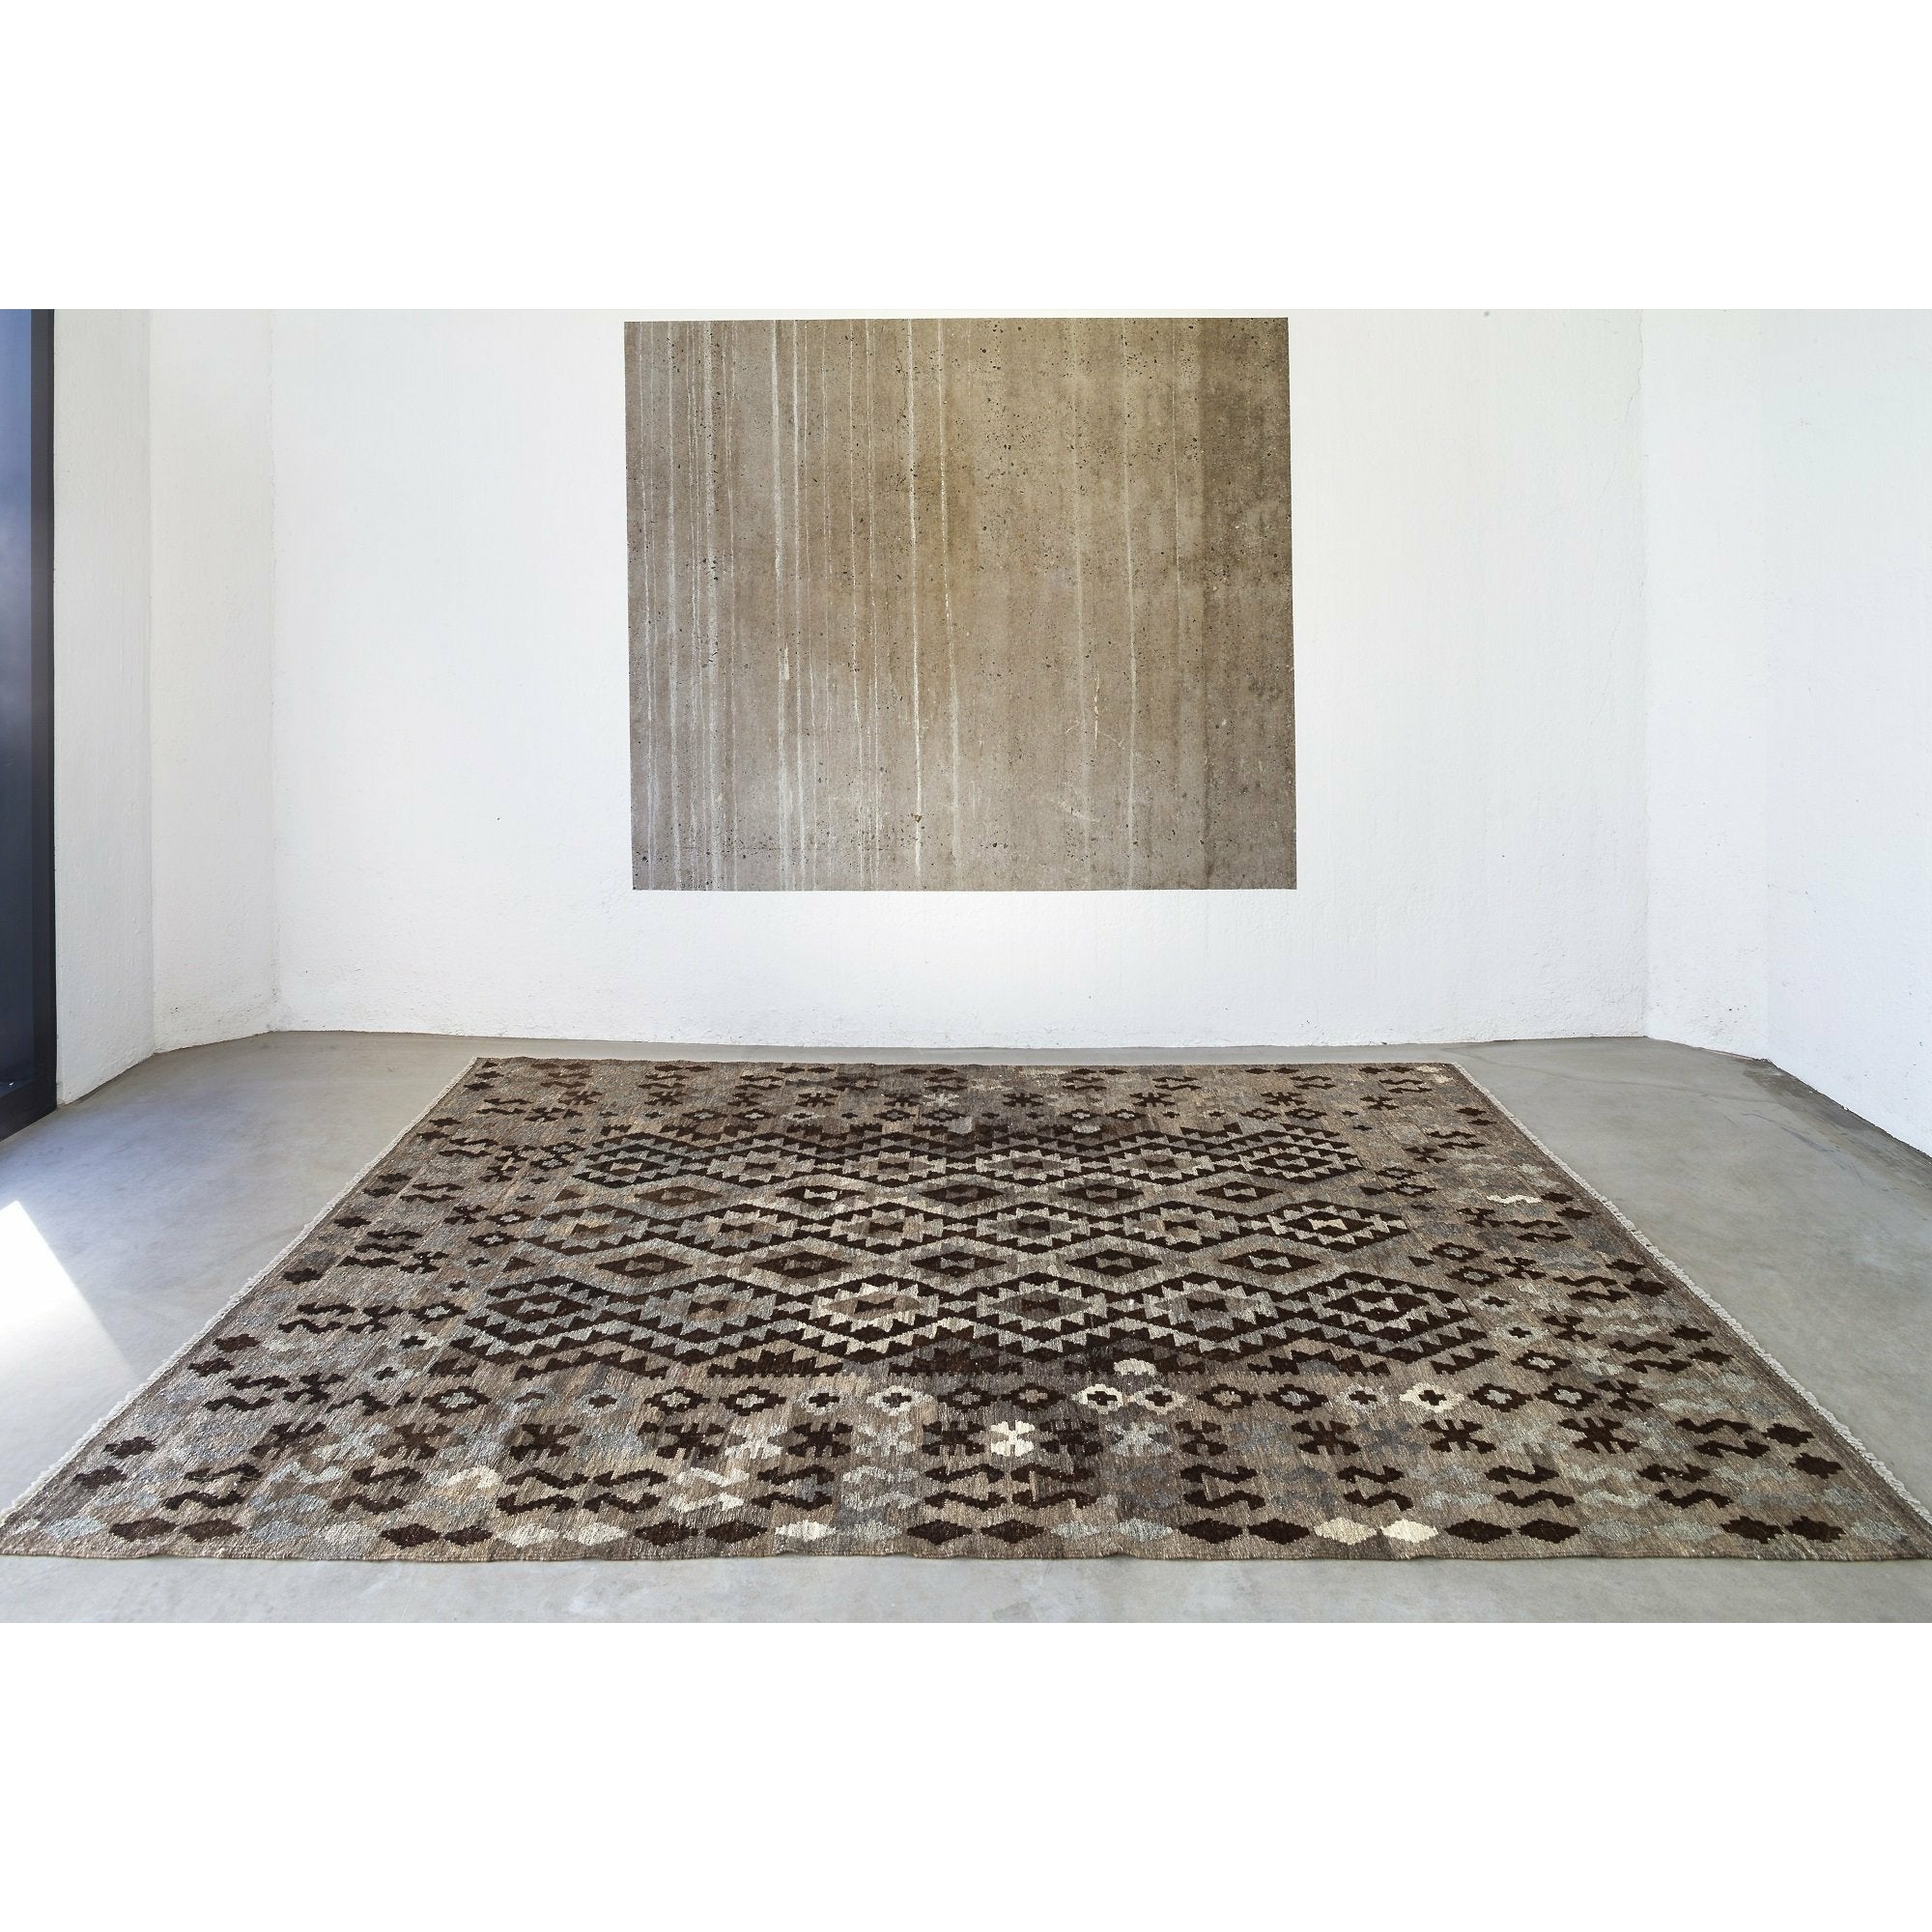 Massimo Kelim Rug Natural Dark Gray/Brown/Black, 200x300 cm